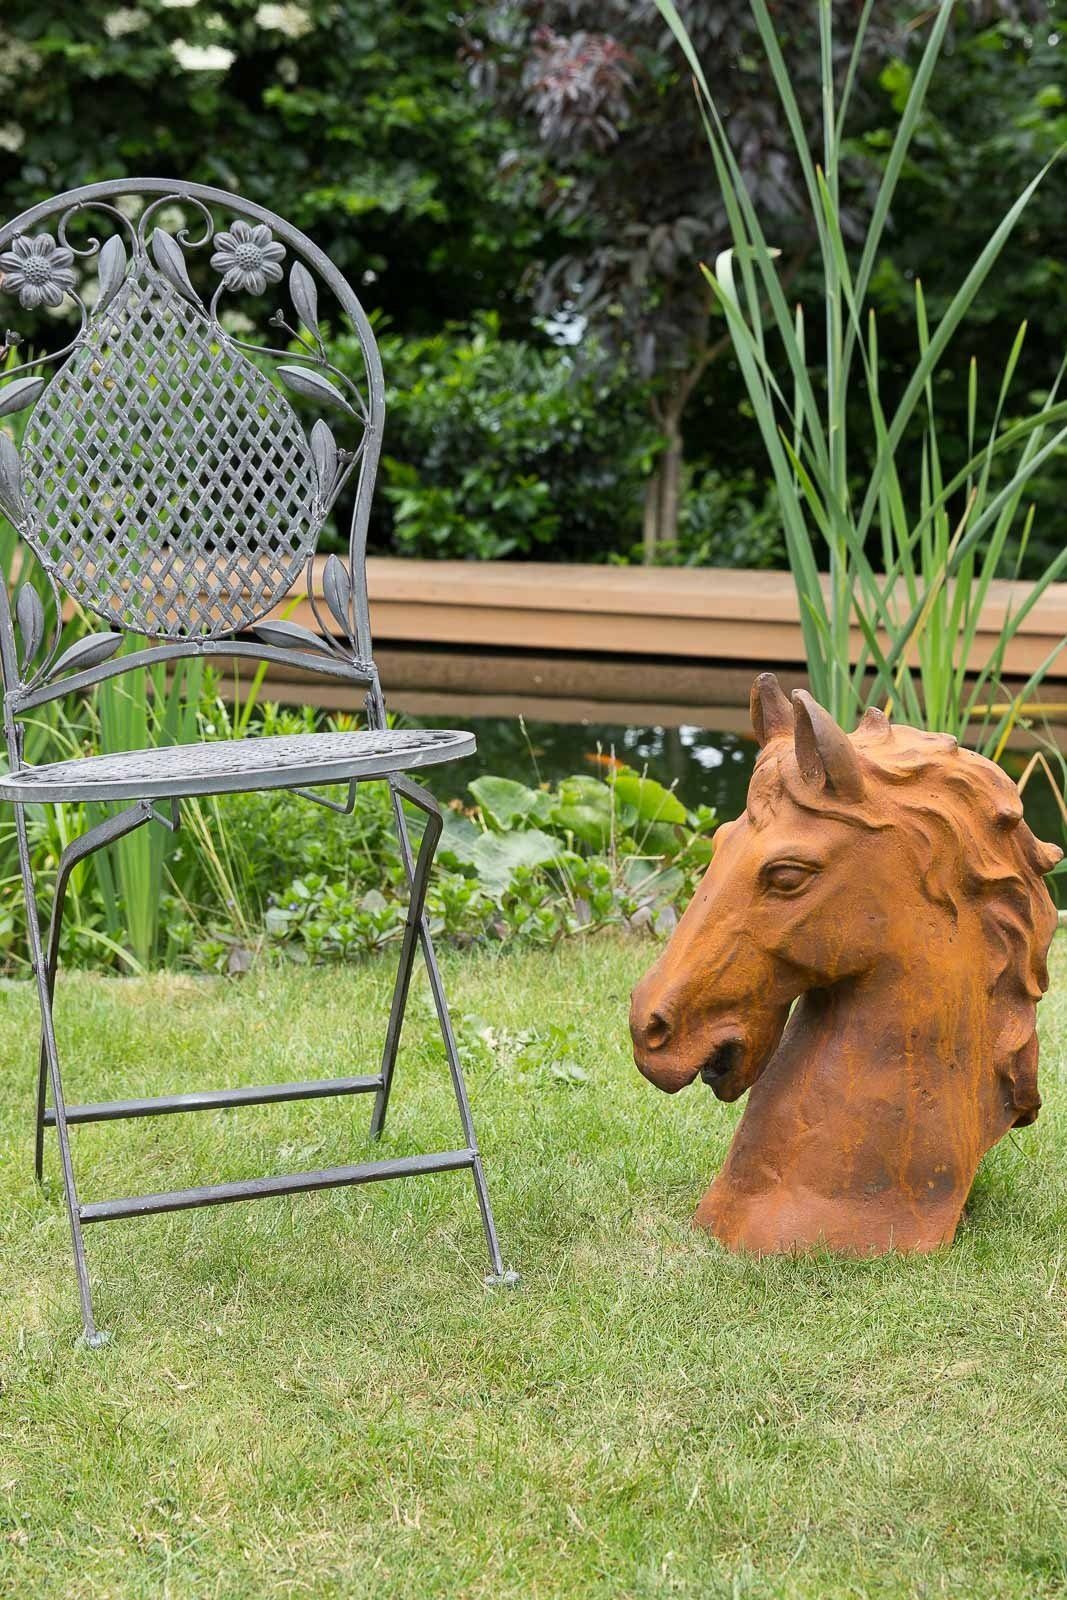 Aubaho Skulptur Pferd Horse Pferdekopf Figur 20 kg Gartenfigur Eisen iron sculpture Höhe